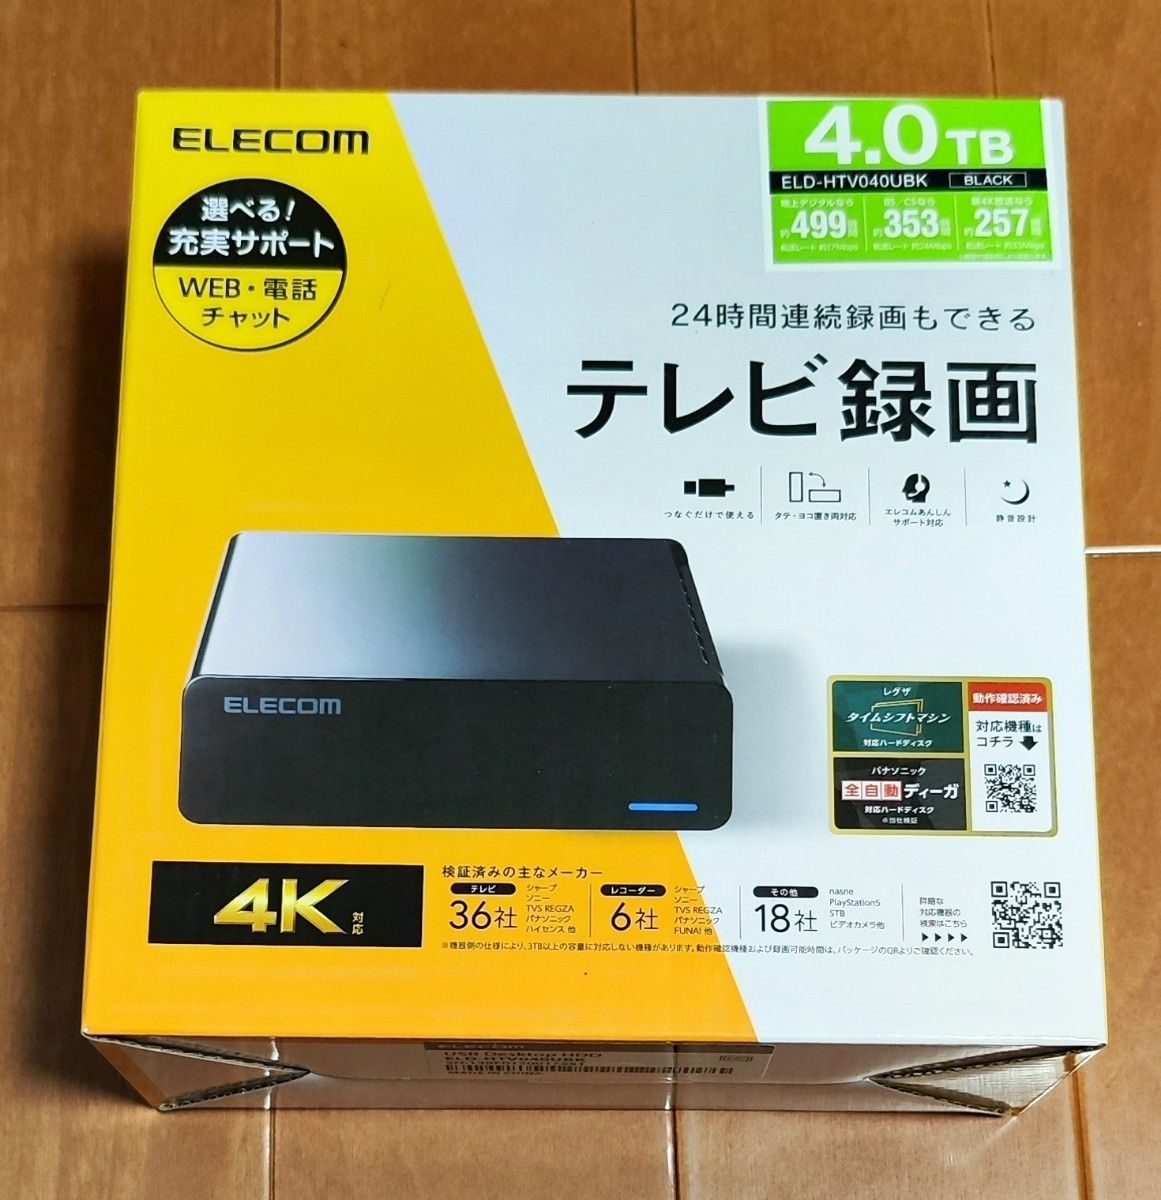 新品未開封品 4TB 外付けハードディスク ELECOM エレコム